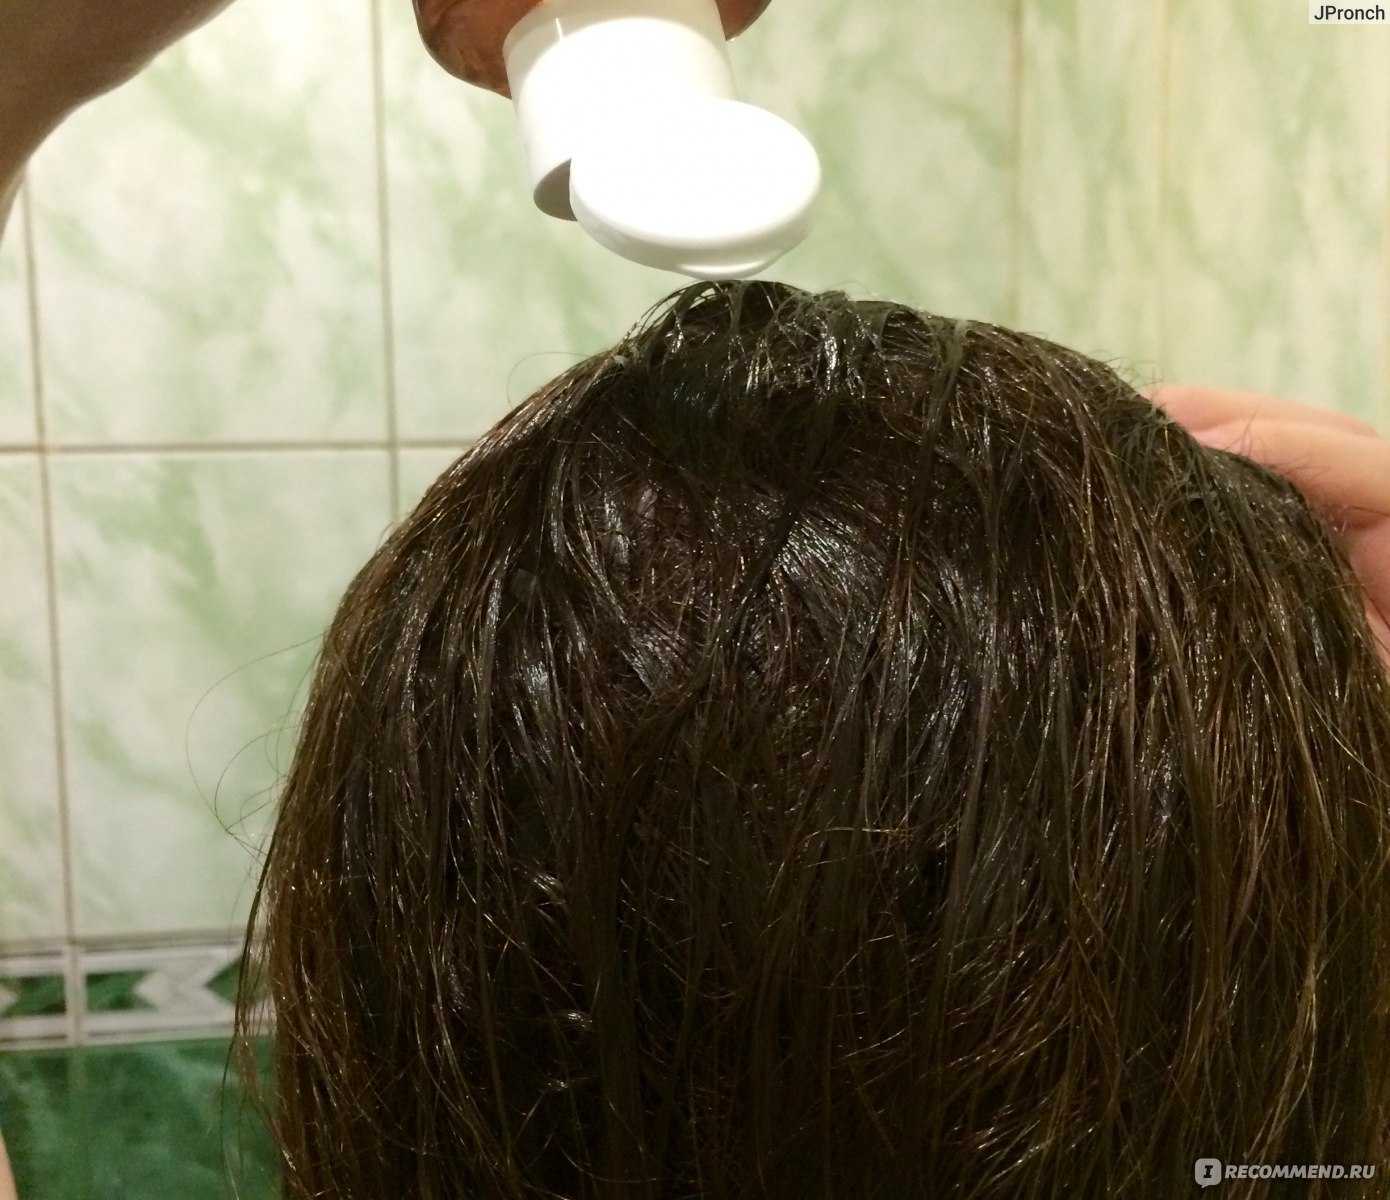 Уксус после мытья волос